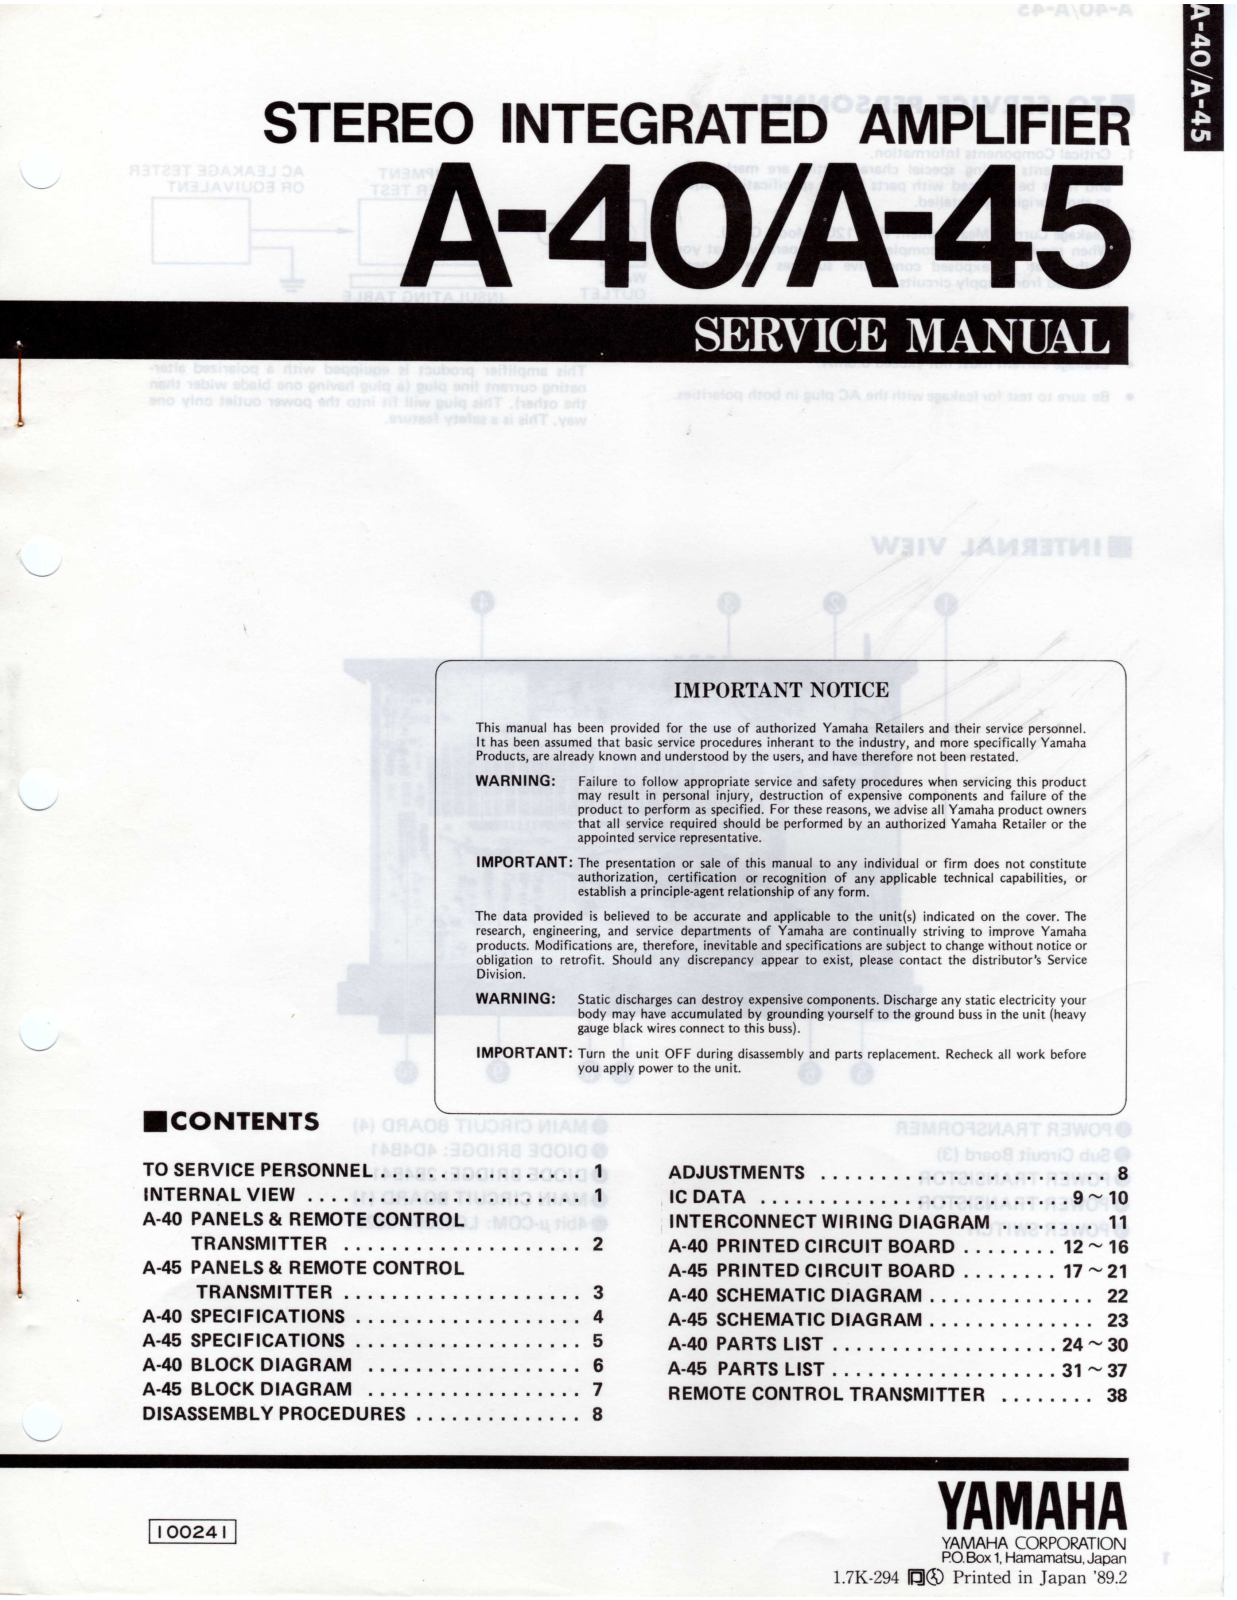 Yamaha A-40, A-45 Service manual